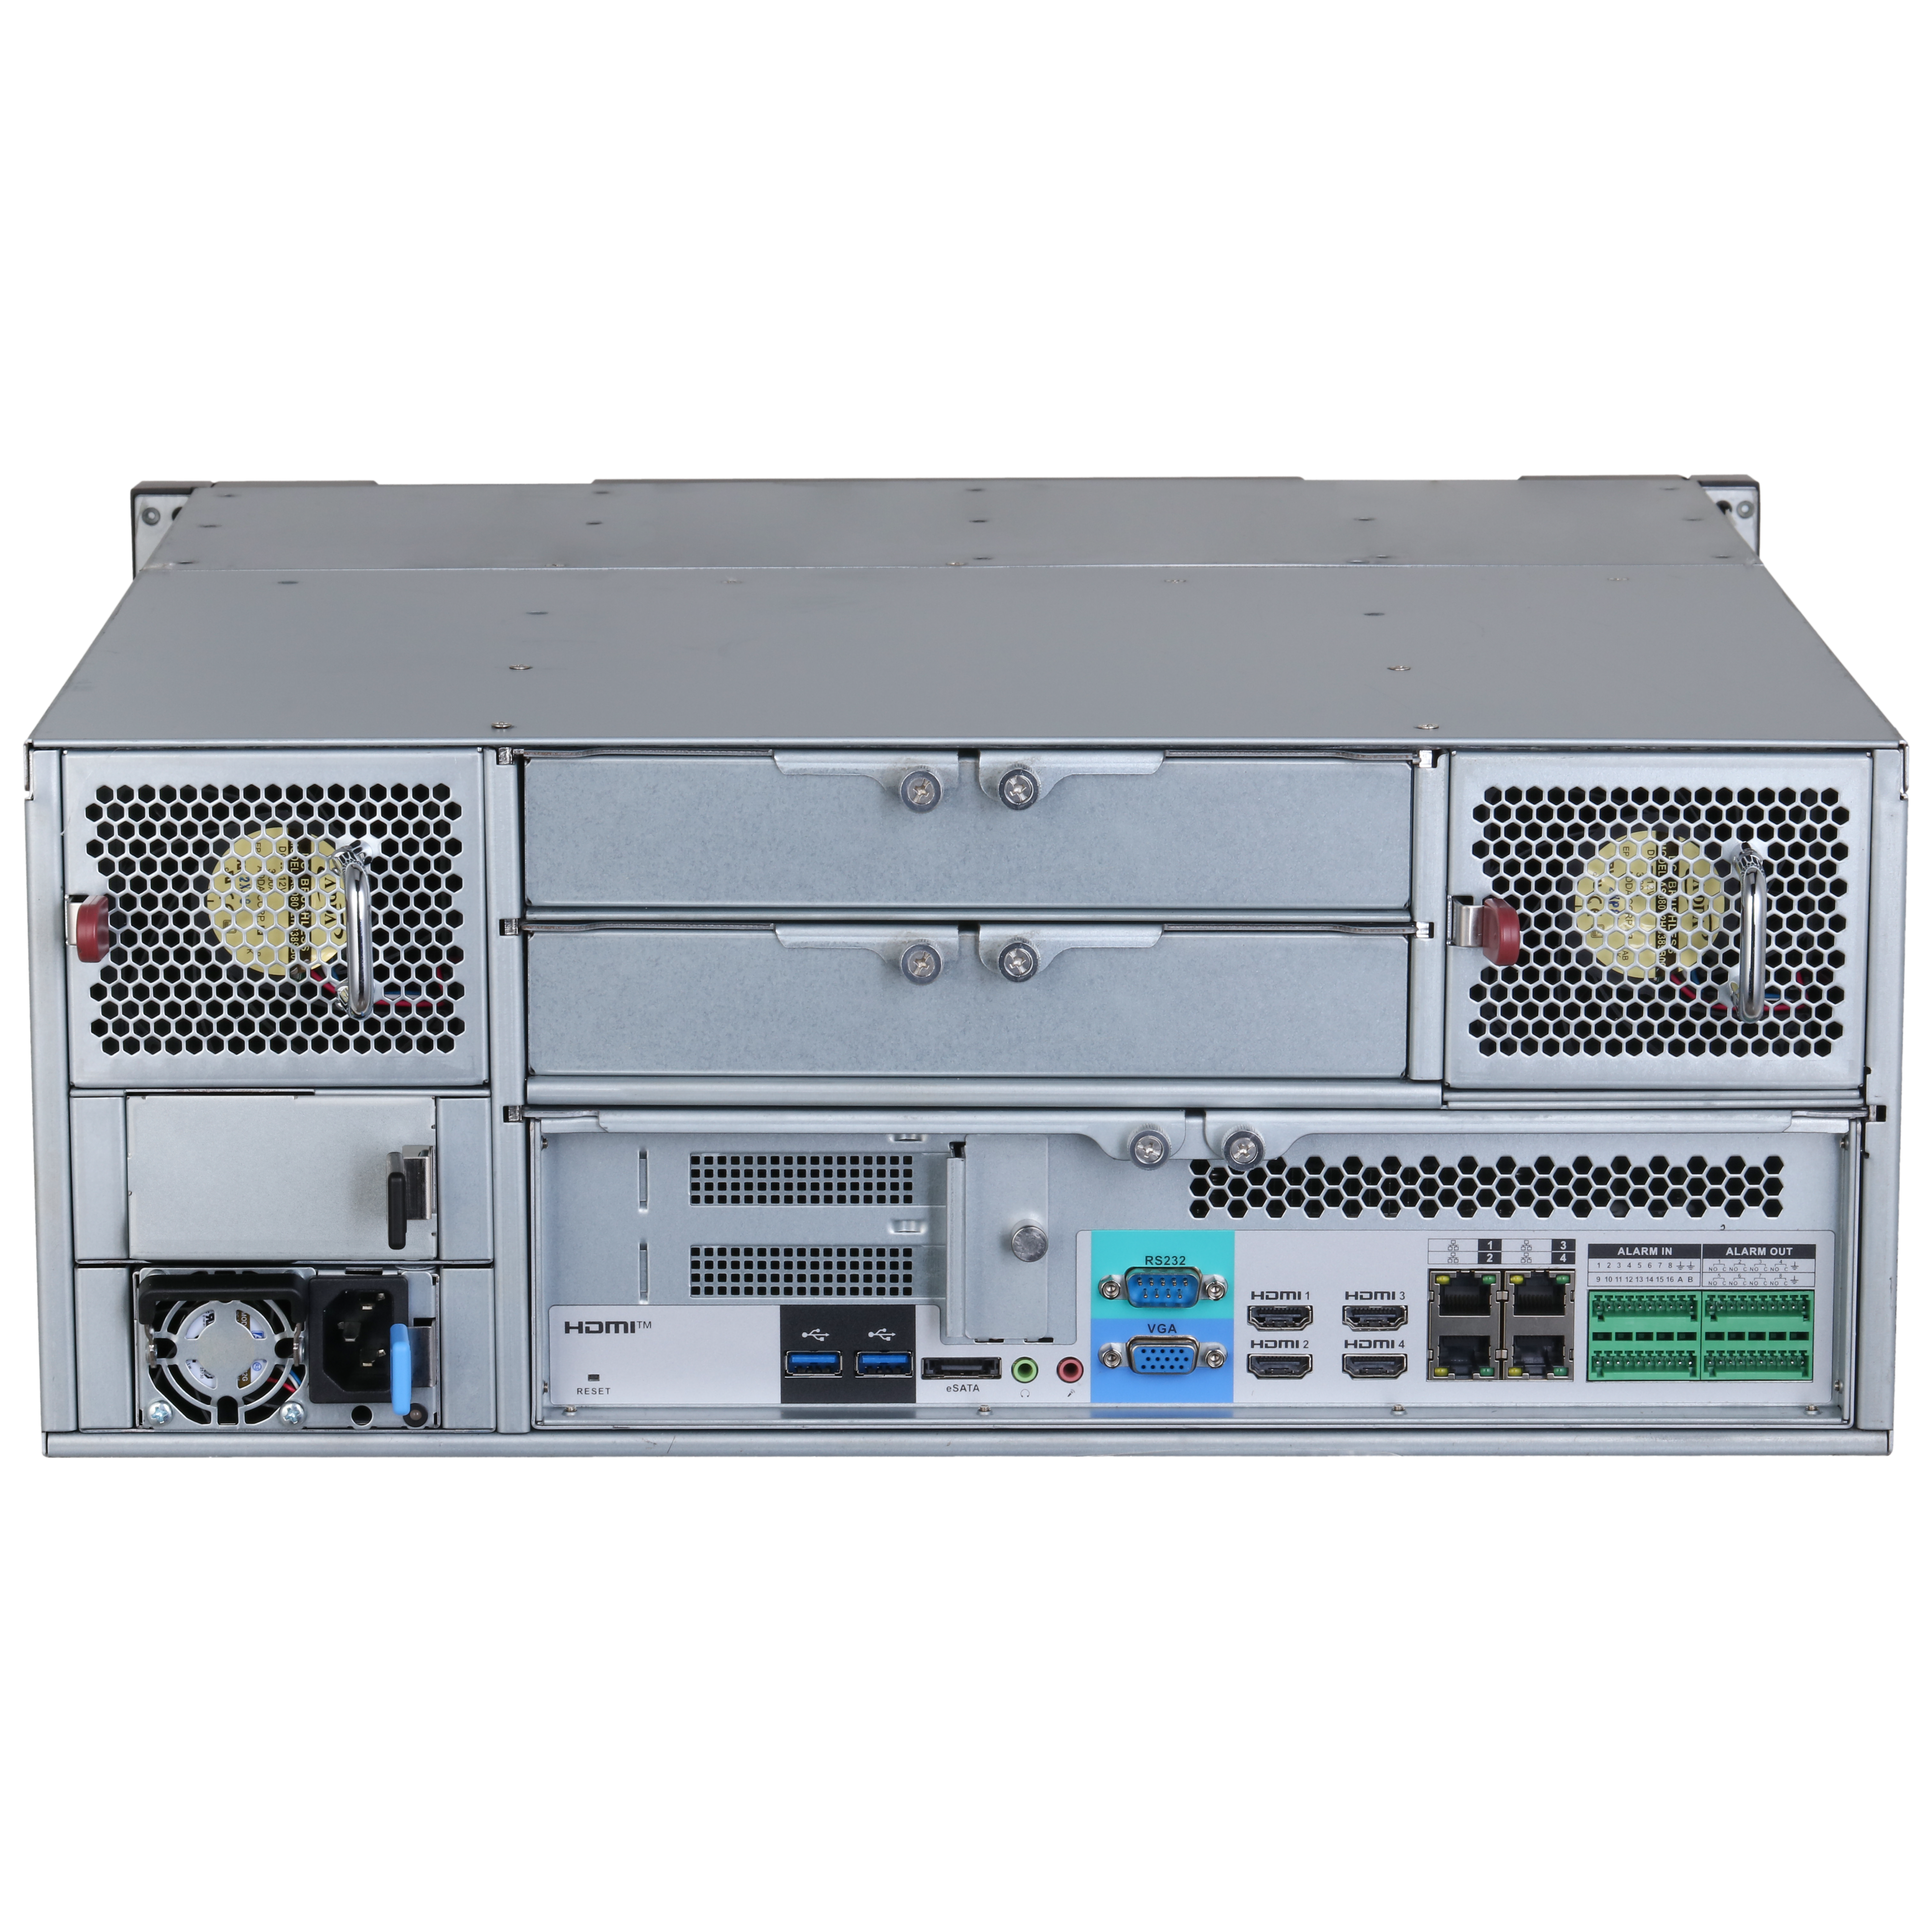 DAHUA IVSS7124 256CH 4U Intelligent Video Surveillance Server